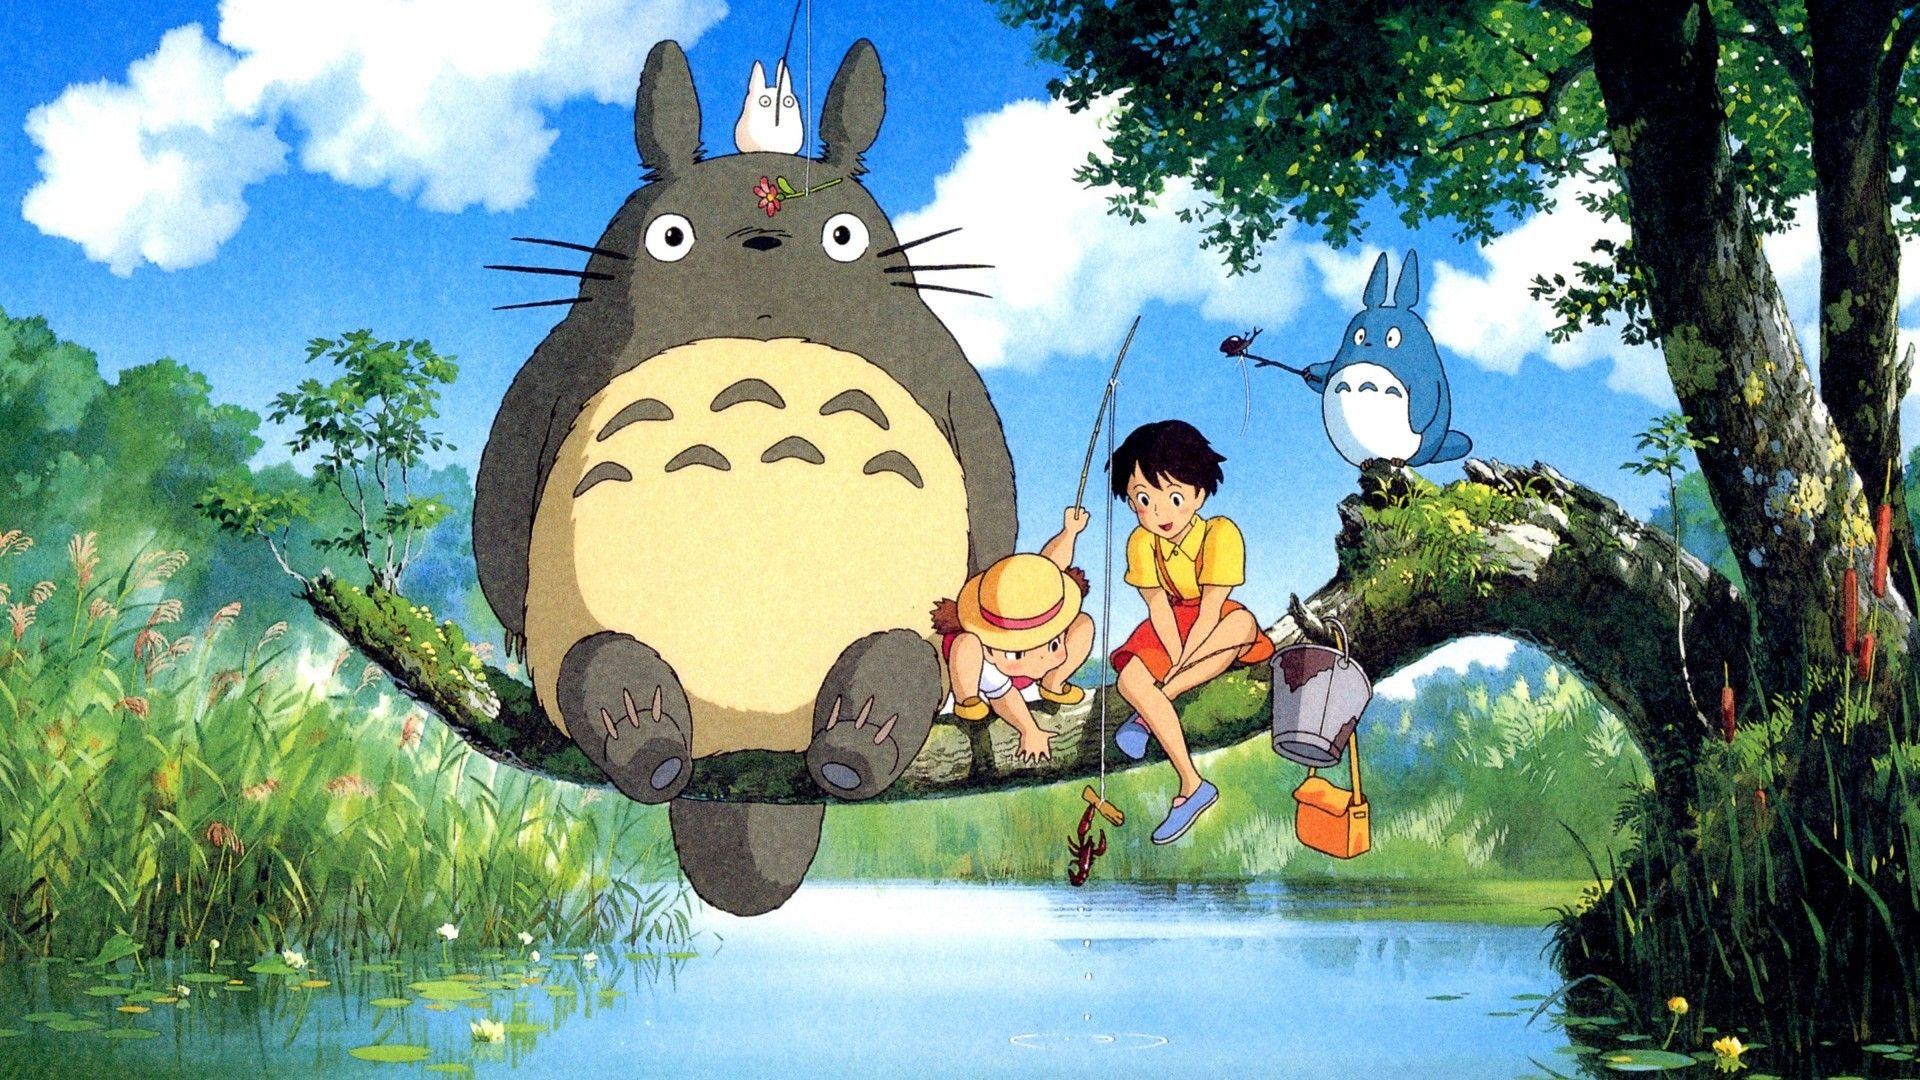 Các fan của những bộ phim hoạt hình Ghibli hẳn sẽ không thể bỏ lỡ bộ sưu tập hình nền Ghibli đầy màu sắc và tinh tế này. Với những hình ảnh tinh tế và đẹp mắt, bạn sẽ có những phút giây thư giãn cùng các nhân vật đáng yêu trong thế giới của Ghibli.